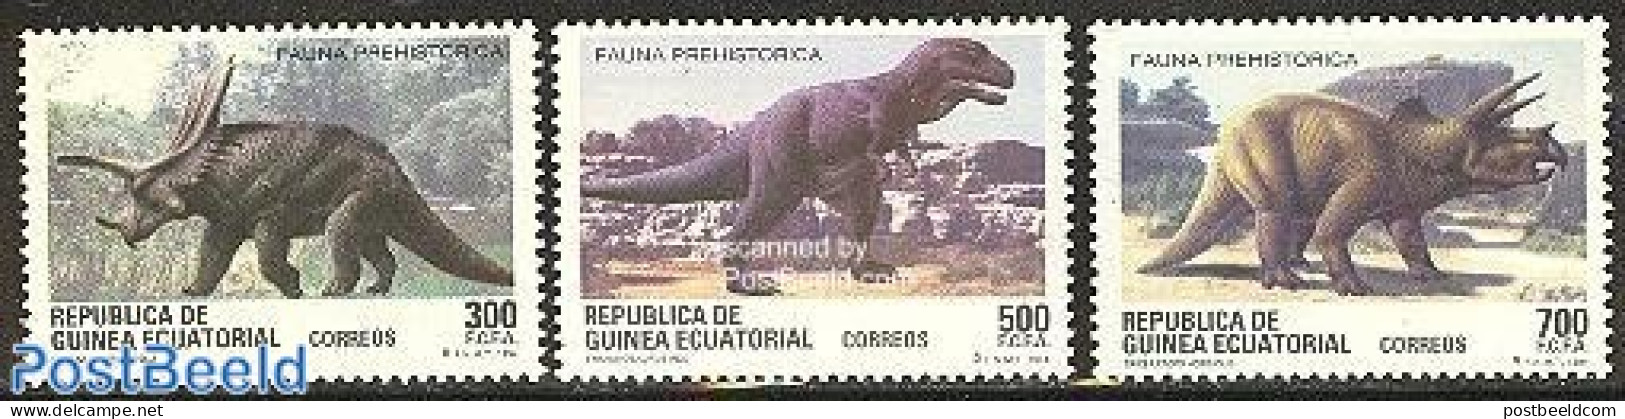 Equatorial Guinea 1994 Preh. Animals 3v, Mint NH, Nature - Prehistoric Animals - Prehistóricos